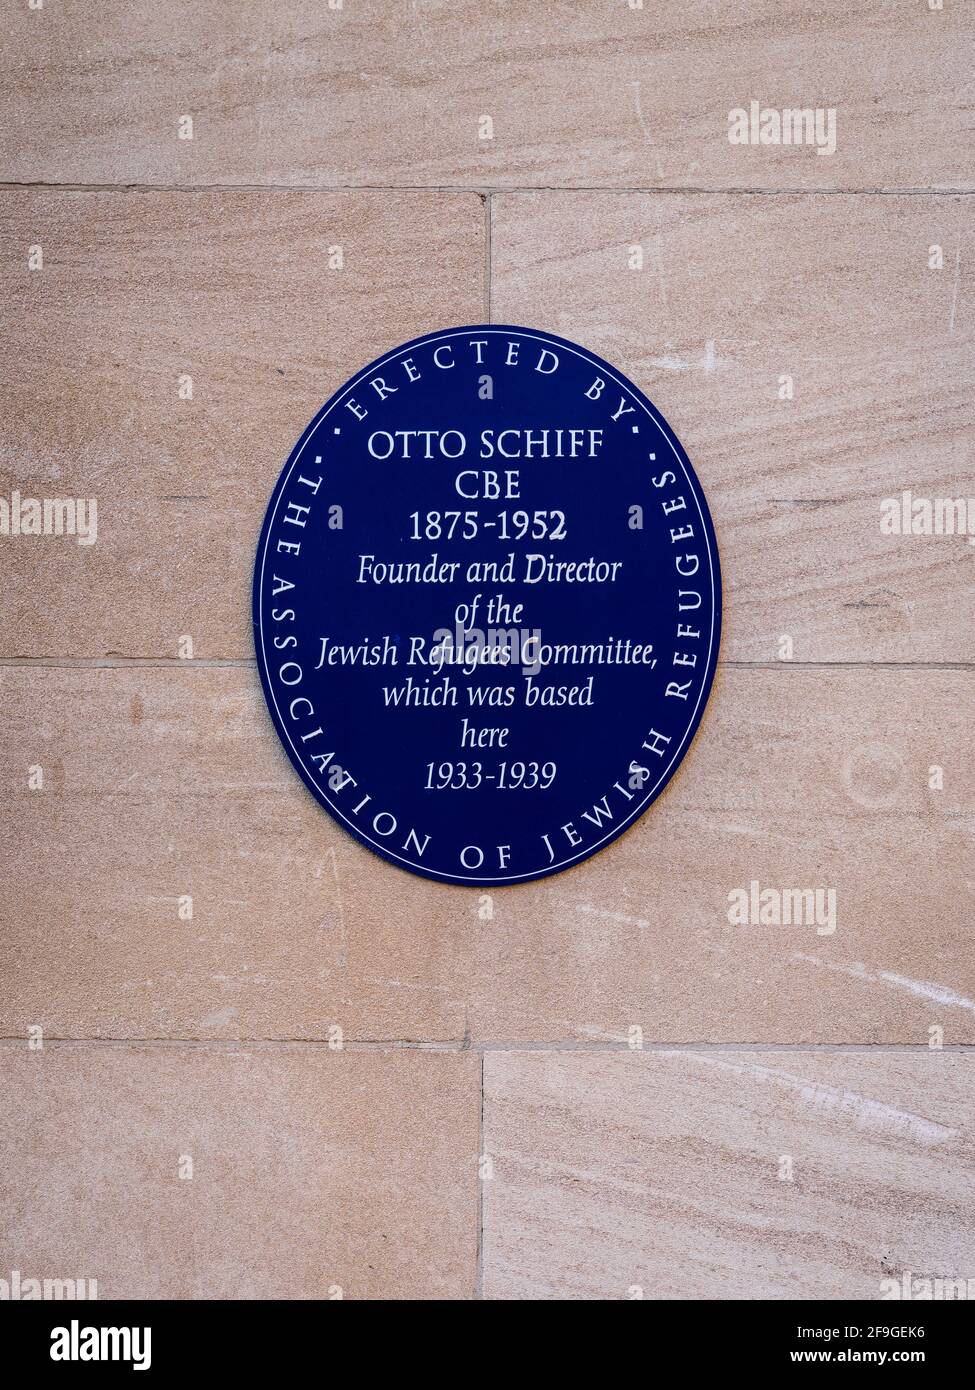 Plaque commémorative à Otto Schiff (1875-1952) fondateur, président et directeur du Comité des réfugiés juifs (CCR) Woburn House, Tavistock Sq. Banque D'Images